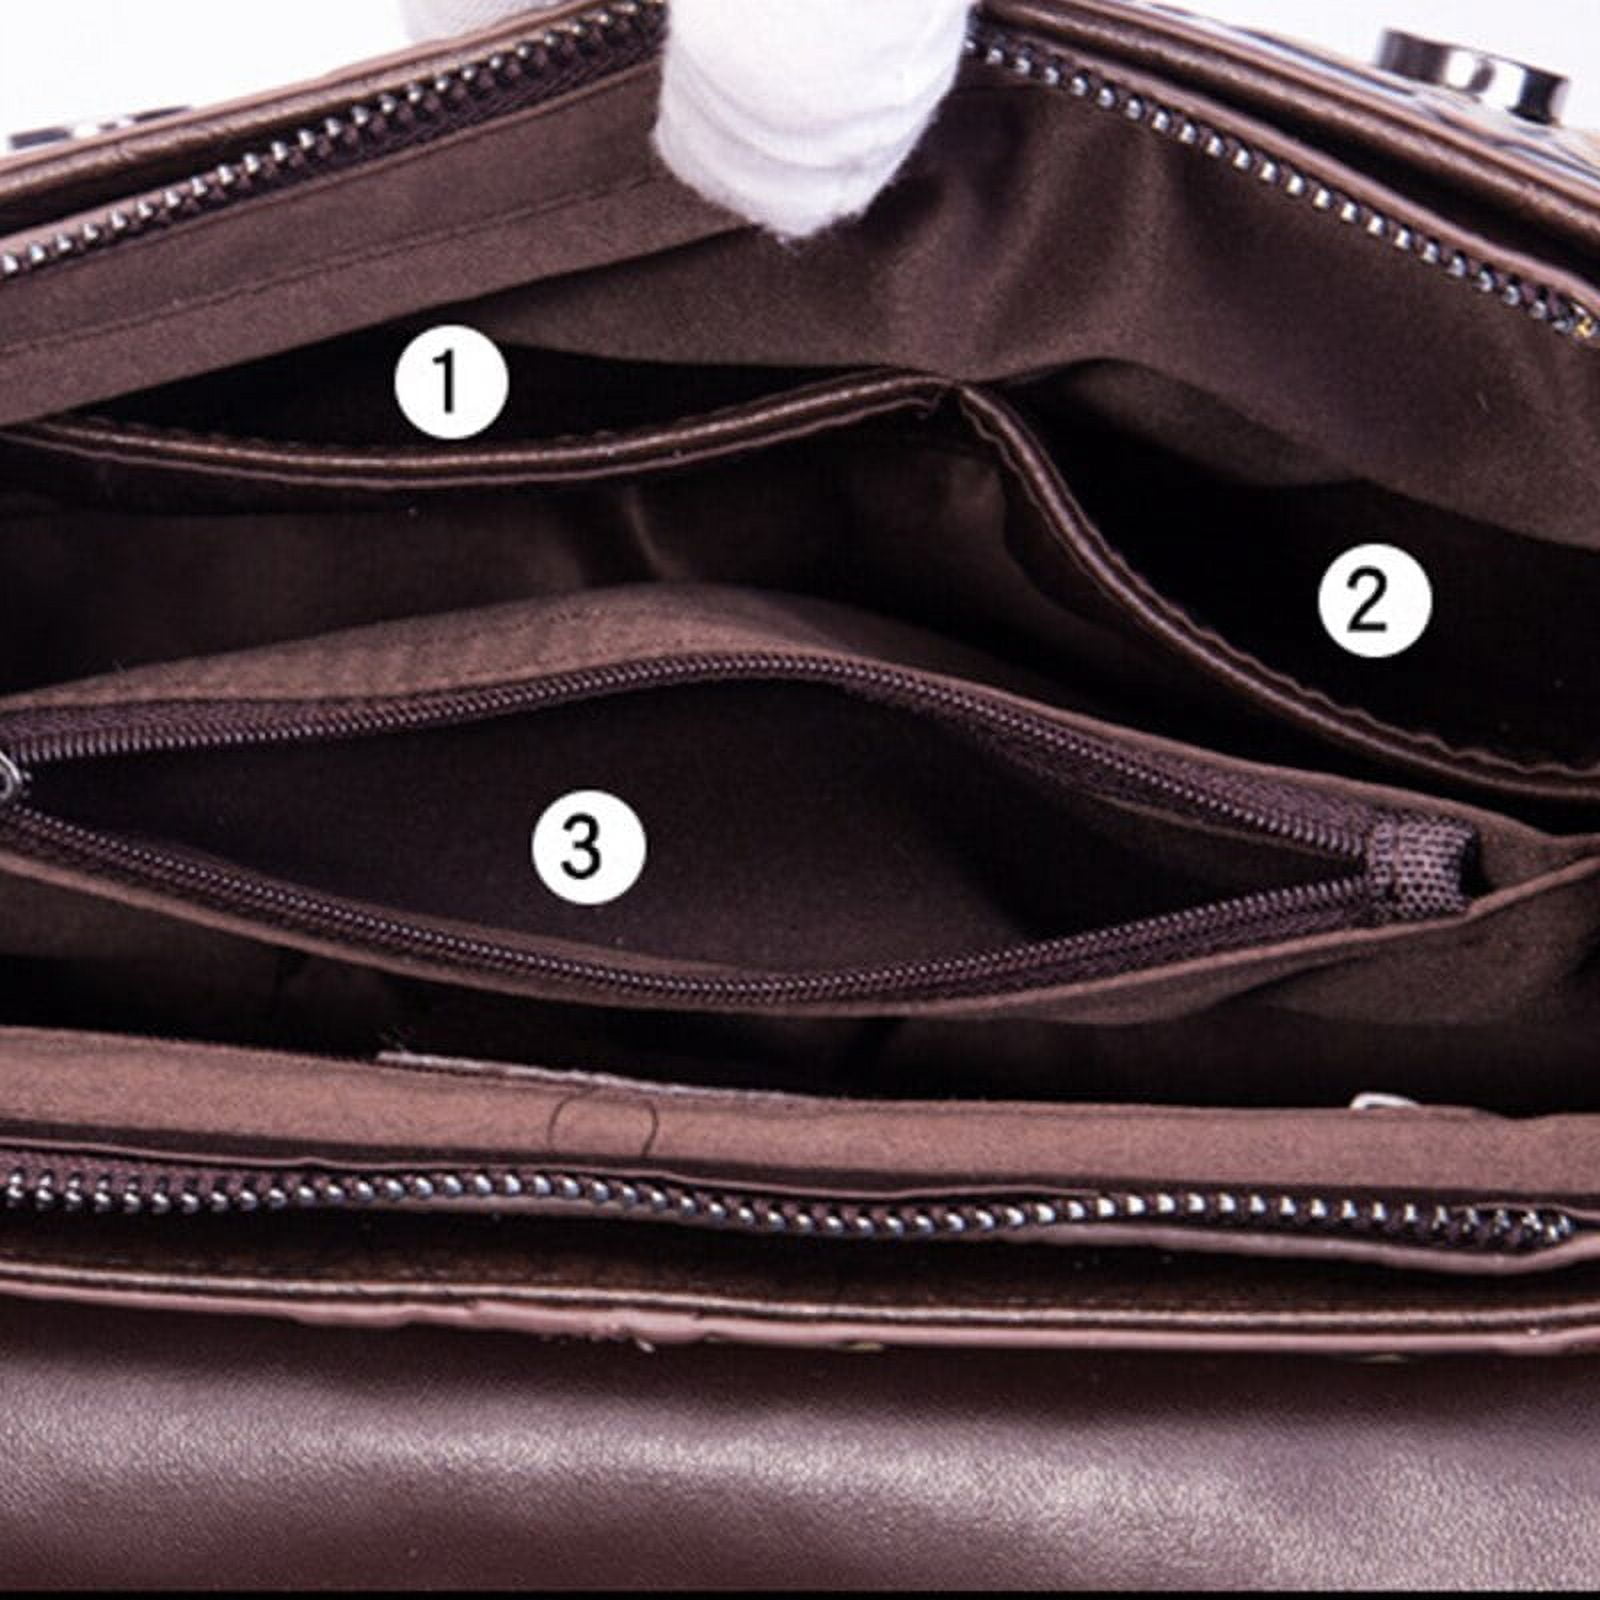 Pikadingnis Retro Shoulder Bag for Women Genuine Leather Crossbody Bag Commute Saddle Bag Handbag Adjustable Shoulder Strap Purse, Adult Unisex, Size